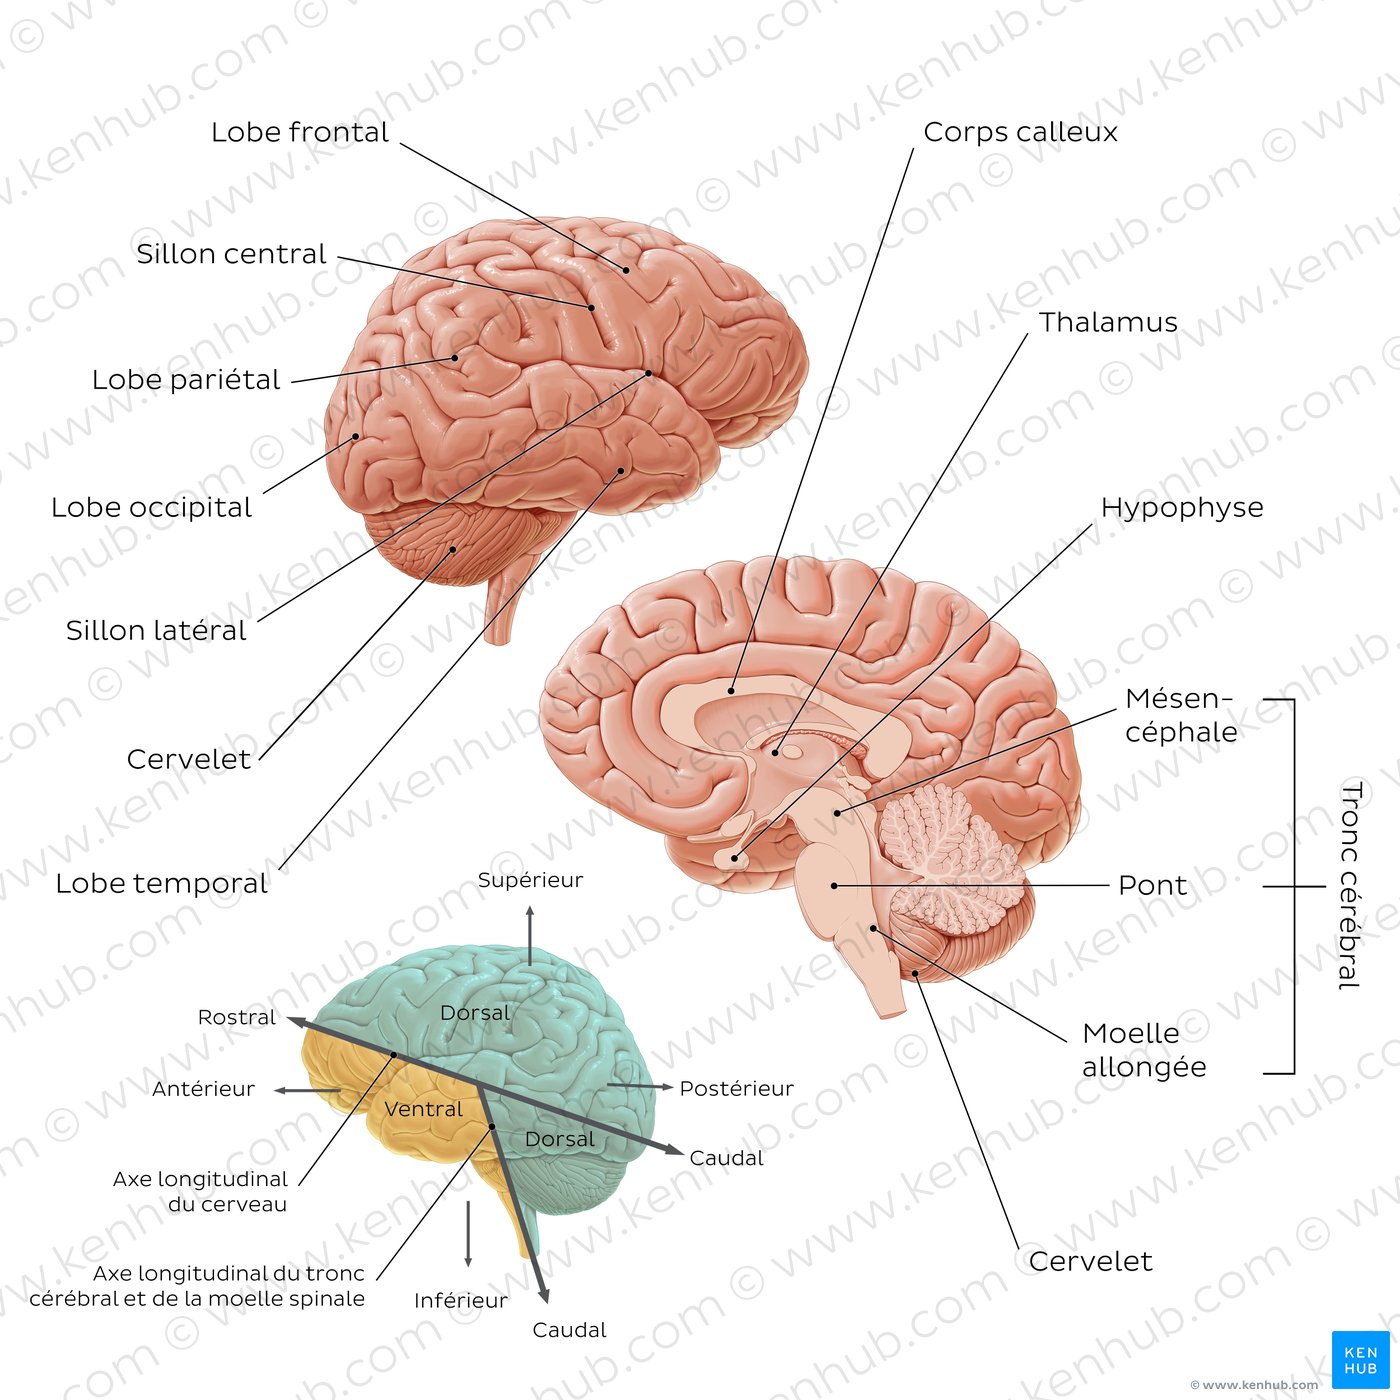 Anatomie de base du cerveau (schéma)